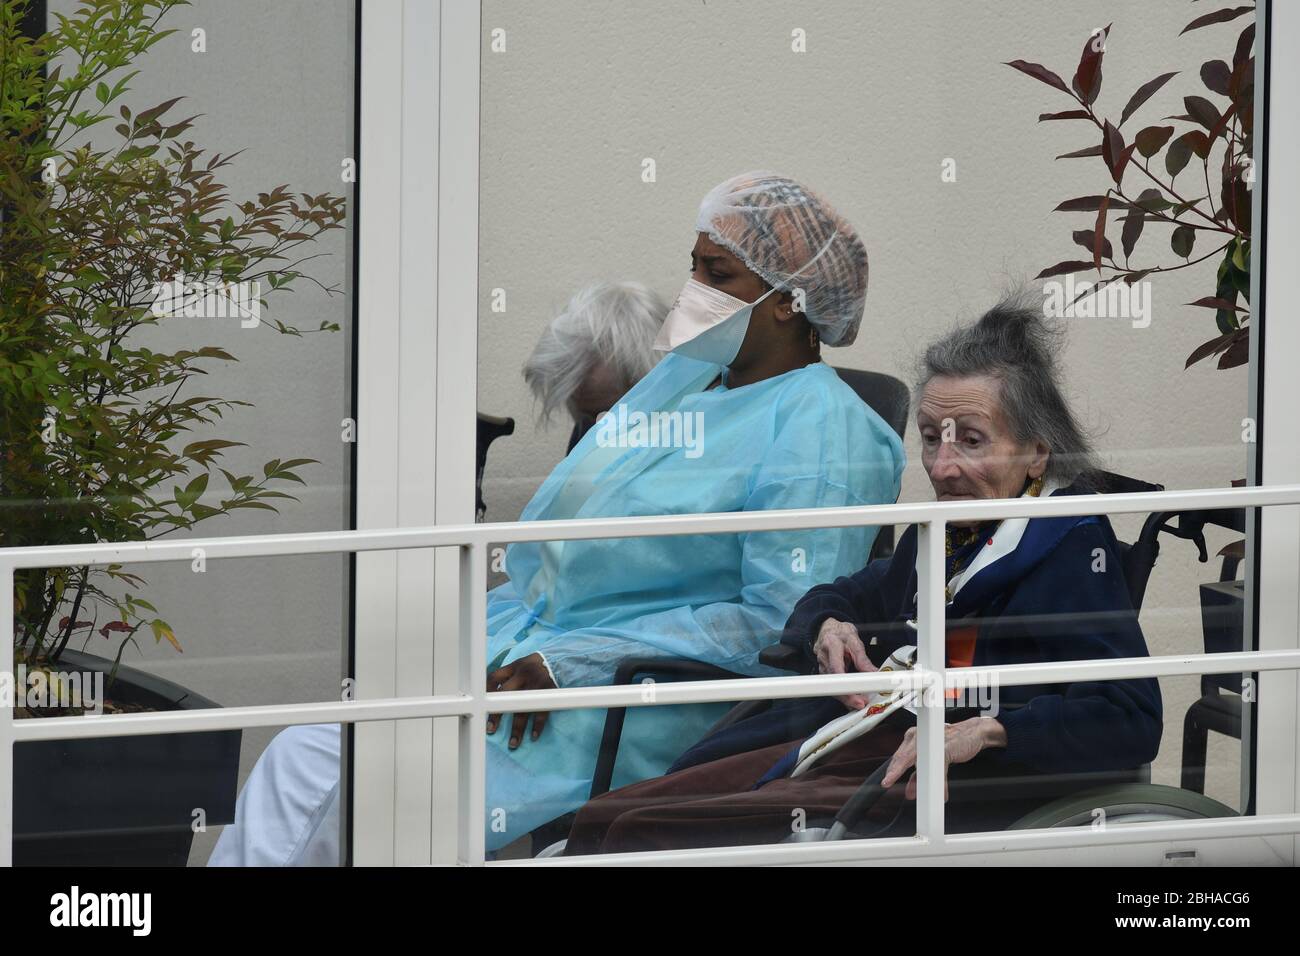 Krankenschwester Pflege für ältere Menschen in einem Pflegeheim während der Coronavirus-Pandemie Covid-19. Betreuerin mit zwei alten Frauen, die dort wohnen. Stockfoto